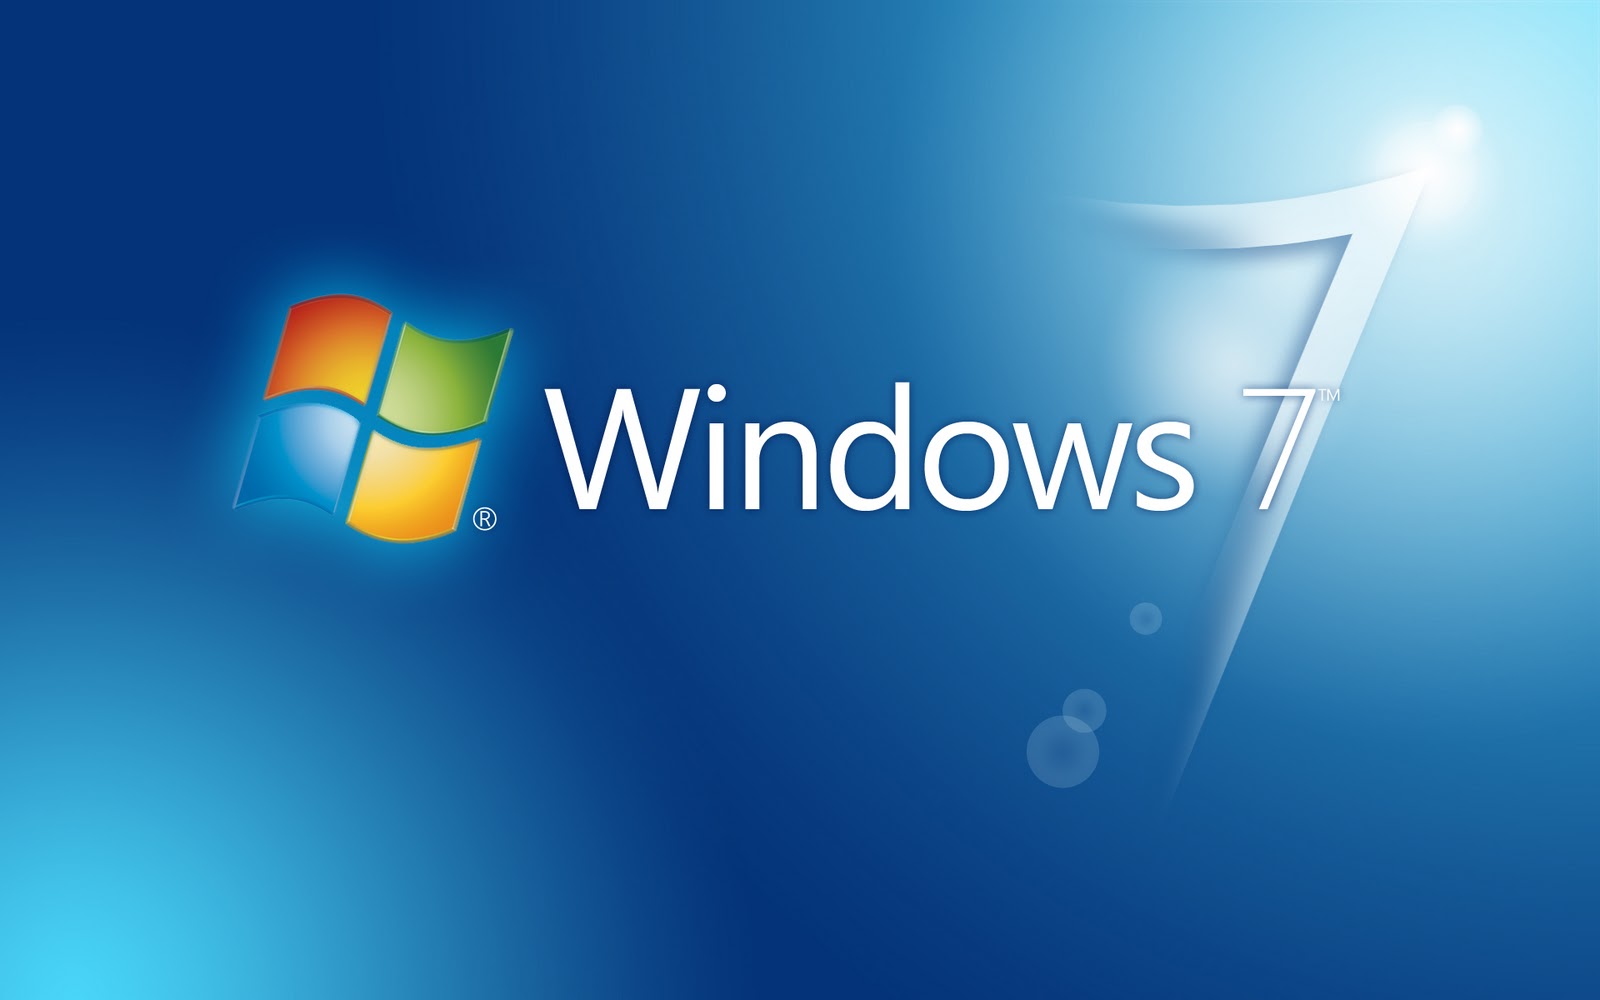 Windows 7 Ürün Anahtarı – 32bit/64bit & Bedava Ürün Anahtarı